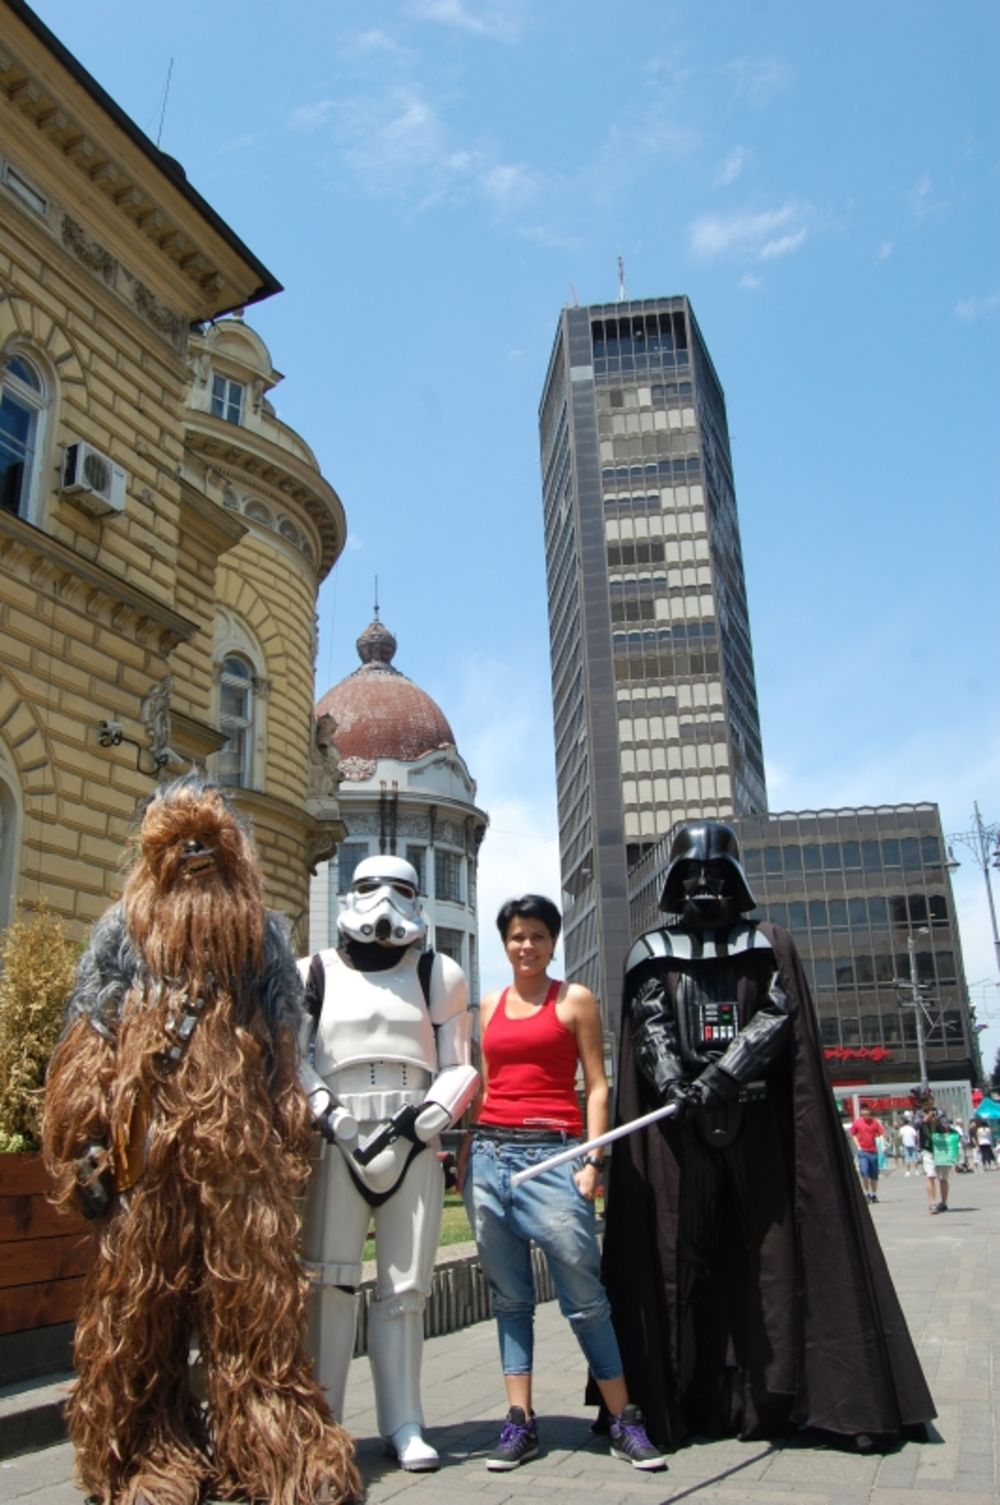 Prva konvencija posvećena epskoj sagi Star Wars u Srbiji održana je u nedelju 19. juna  u beogradskom SKC-u, a u multimedijalnom celodnevnom programu učestvovao je veliko broj fanova ove kultne sage, među kojima su bili i pevač Marko Bulat, poznat kao kolekcio